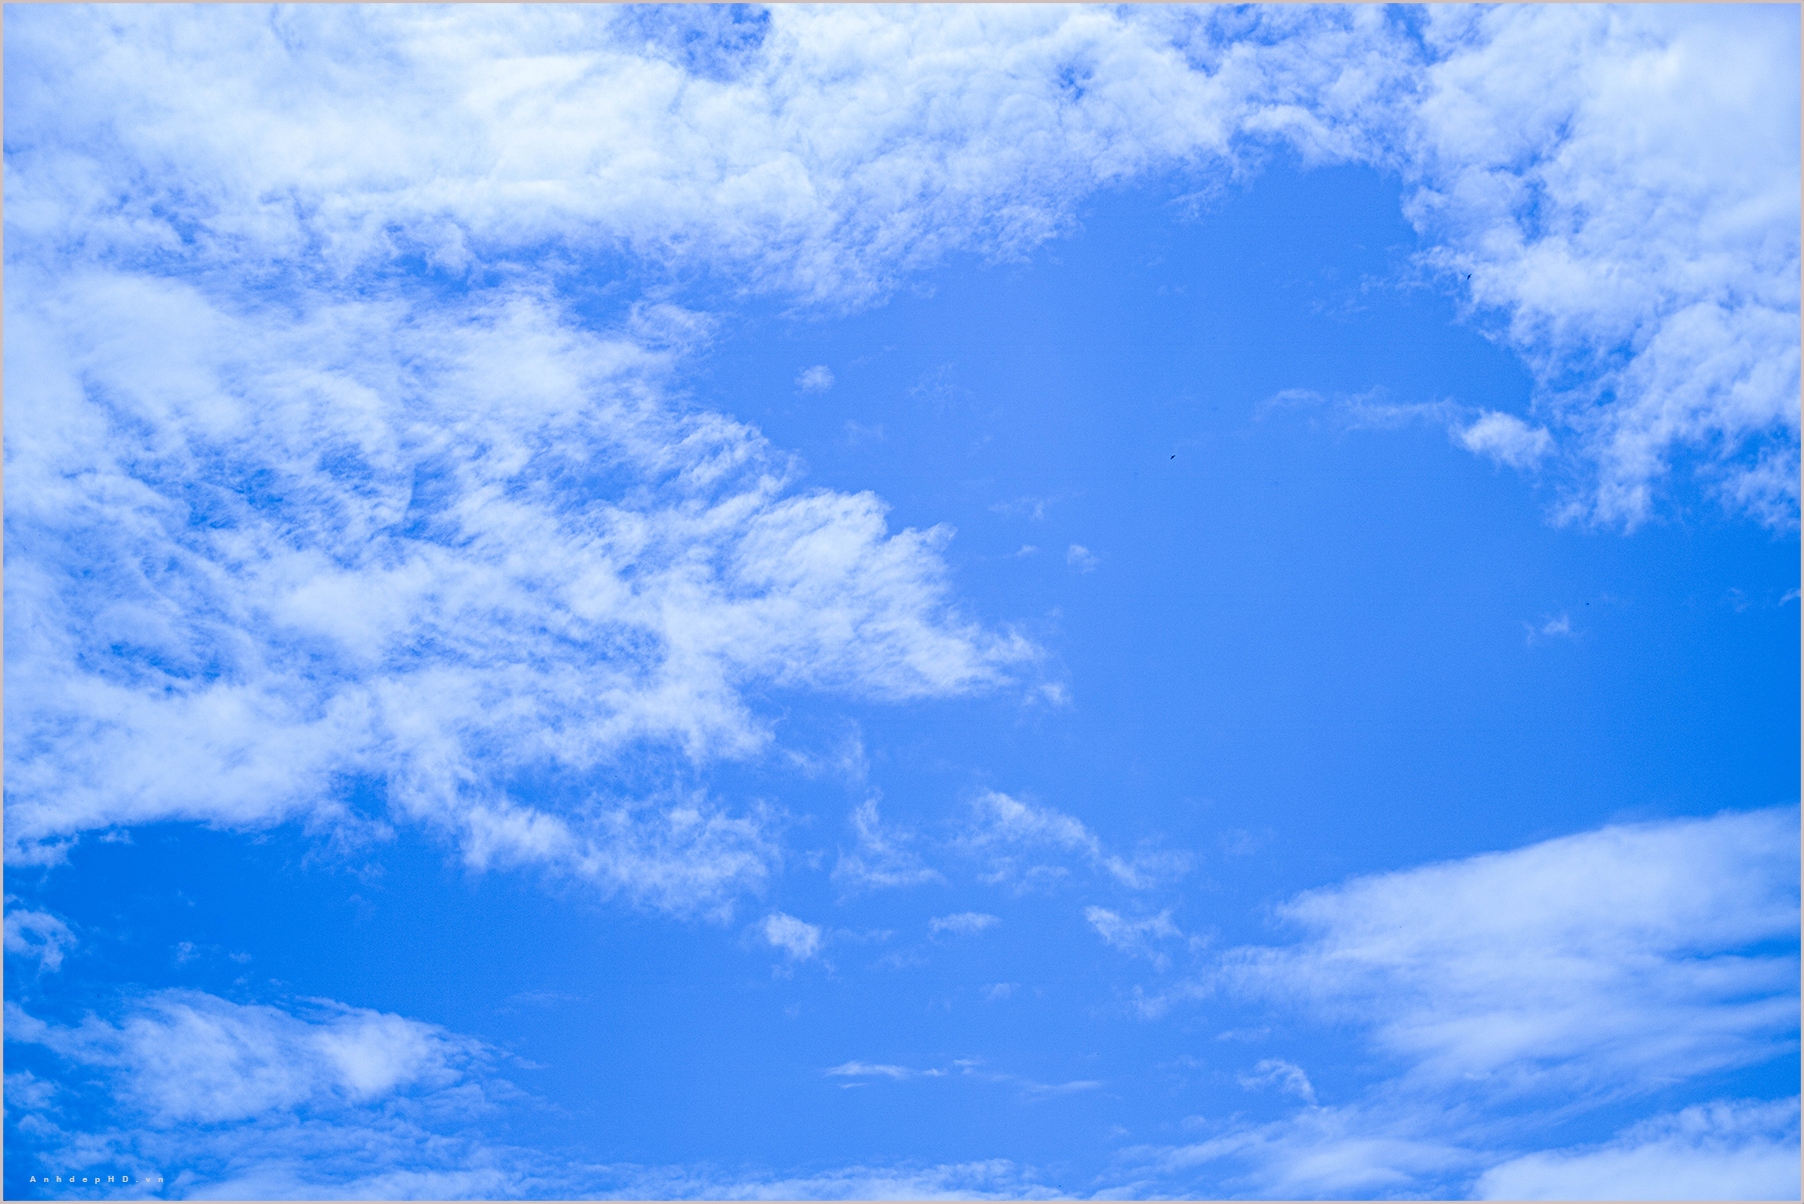 Mây - kẻ tàng hình gợi nhắc cho chúng ta bao niềm đam mê và mong muốn tự do bay lượn giữa bầu trời. Hình ảnh mây bay lơ lửng đang chờ đón bạn khám phá, đưa bạn tới những tầm cao mới để chiêm ngưỡng tuyệt đẹp những cánh đồng mây trắng. Hãy cùng trải nghiệm sự bình yên và mê hoặc vô tận từ phong cảnh thiên nhiên này.